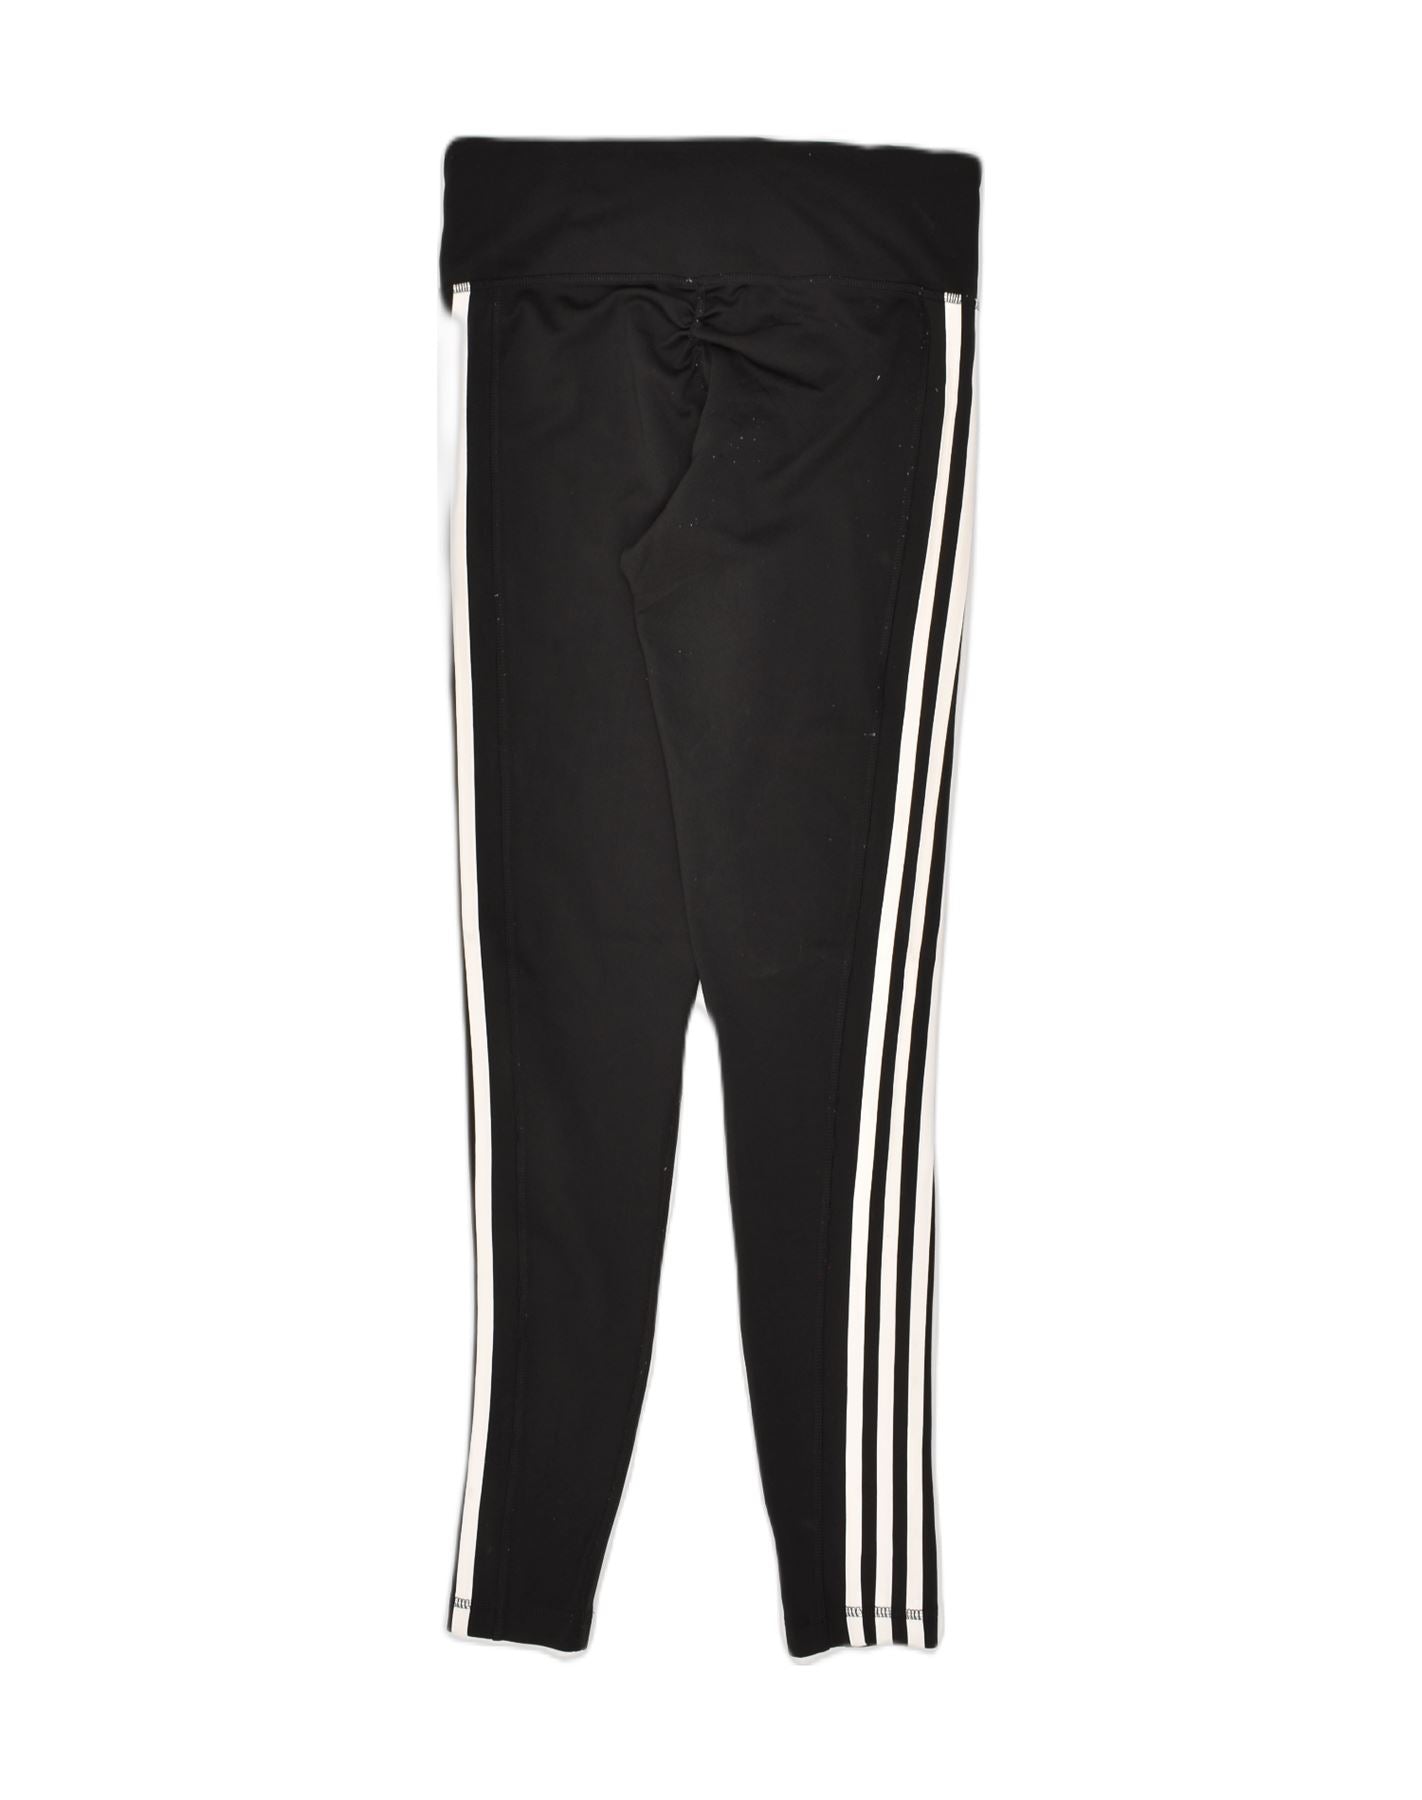 BNWT Adidas Womens Size M Black/White Climalite Leggings(s)